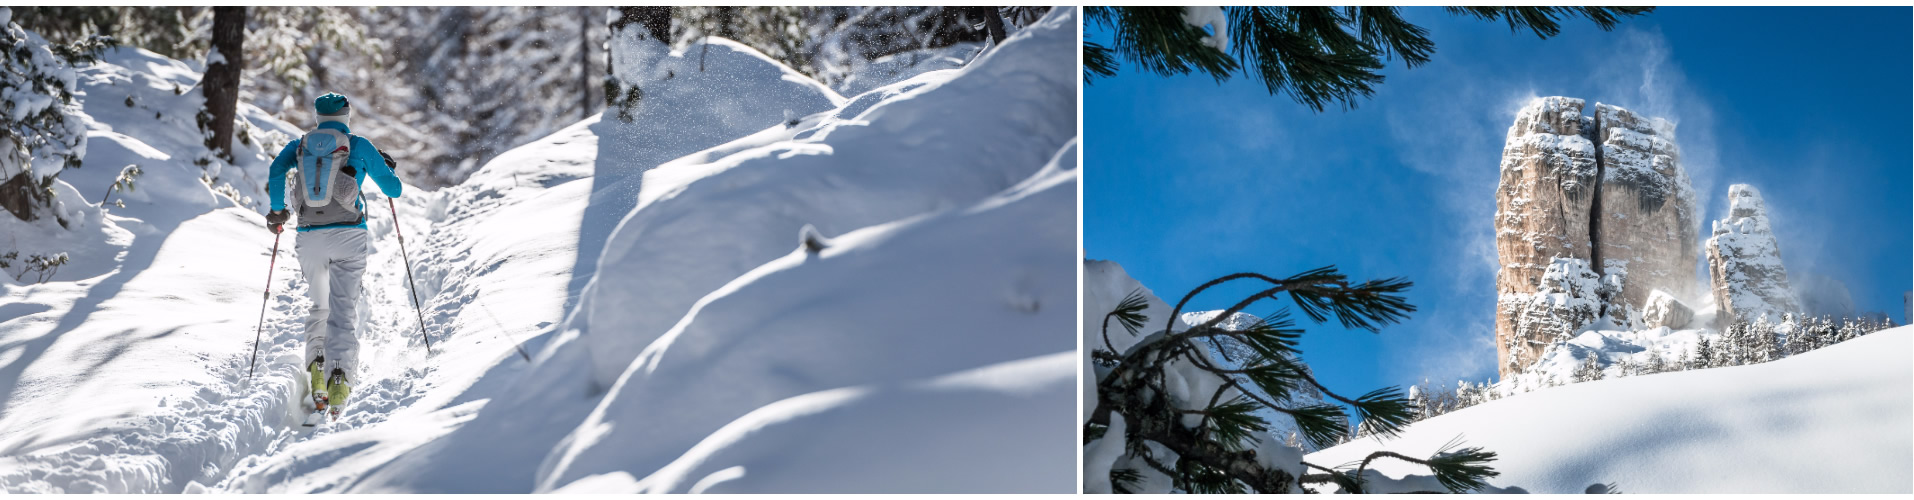 Vento, neve e cielo azzurro in Cinque Torri. Nel bosco salendo in Cinque Torri. (ph. Giuseppe Ghedina)